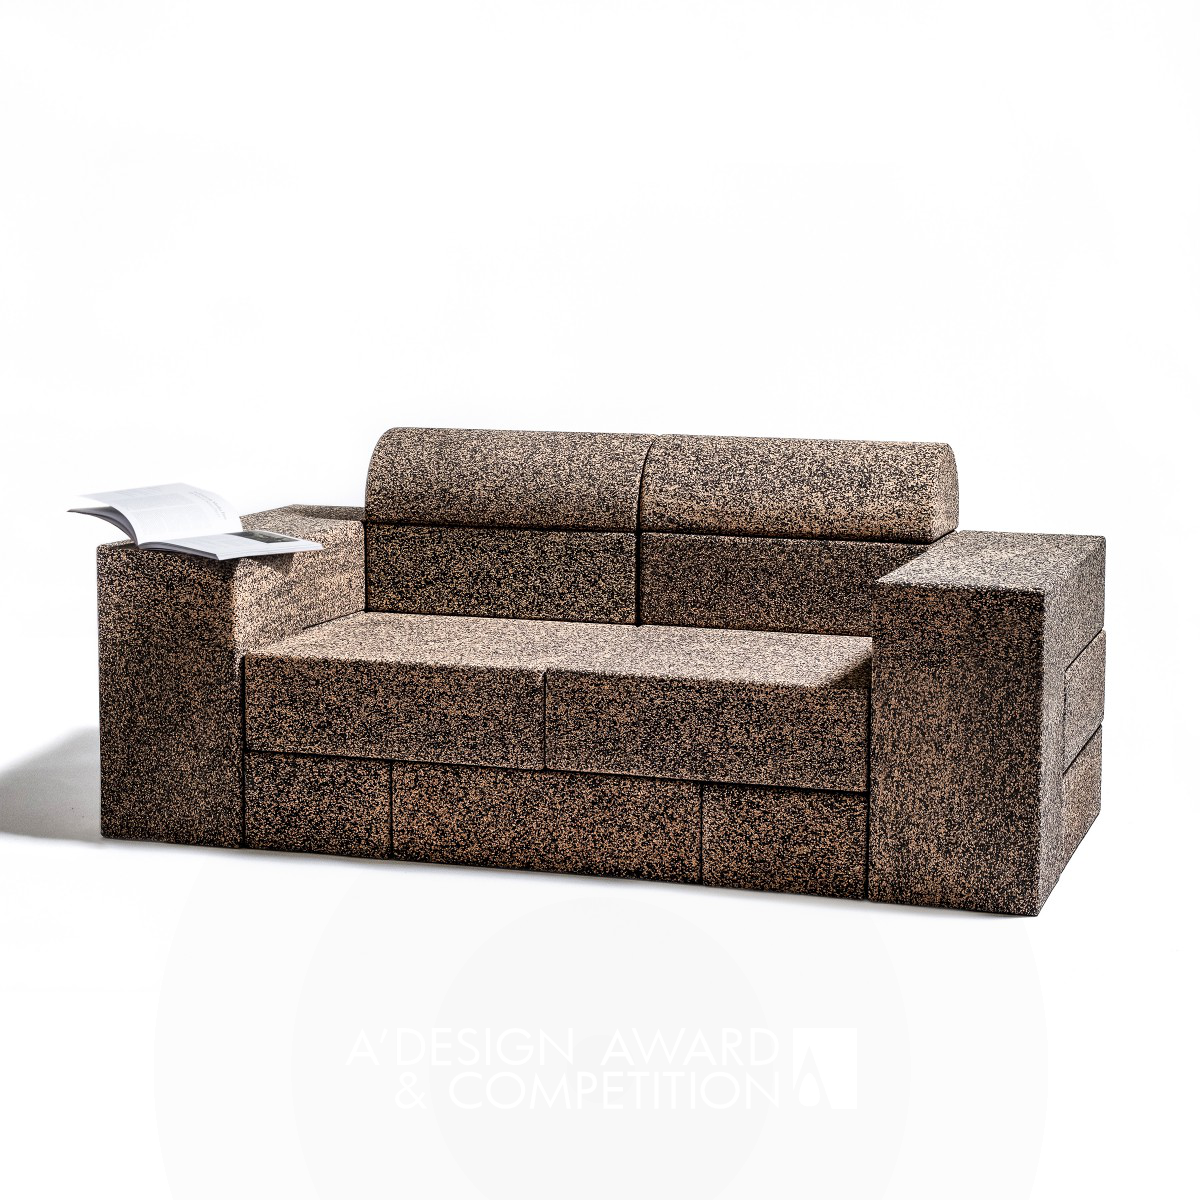 Cork Block Sofa by Miguel Arruda